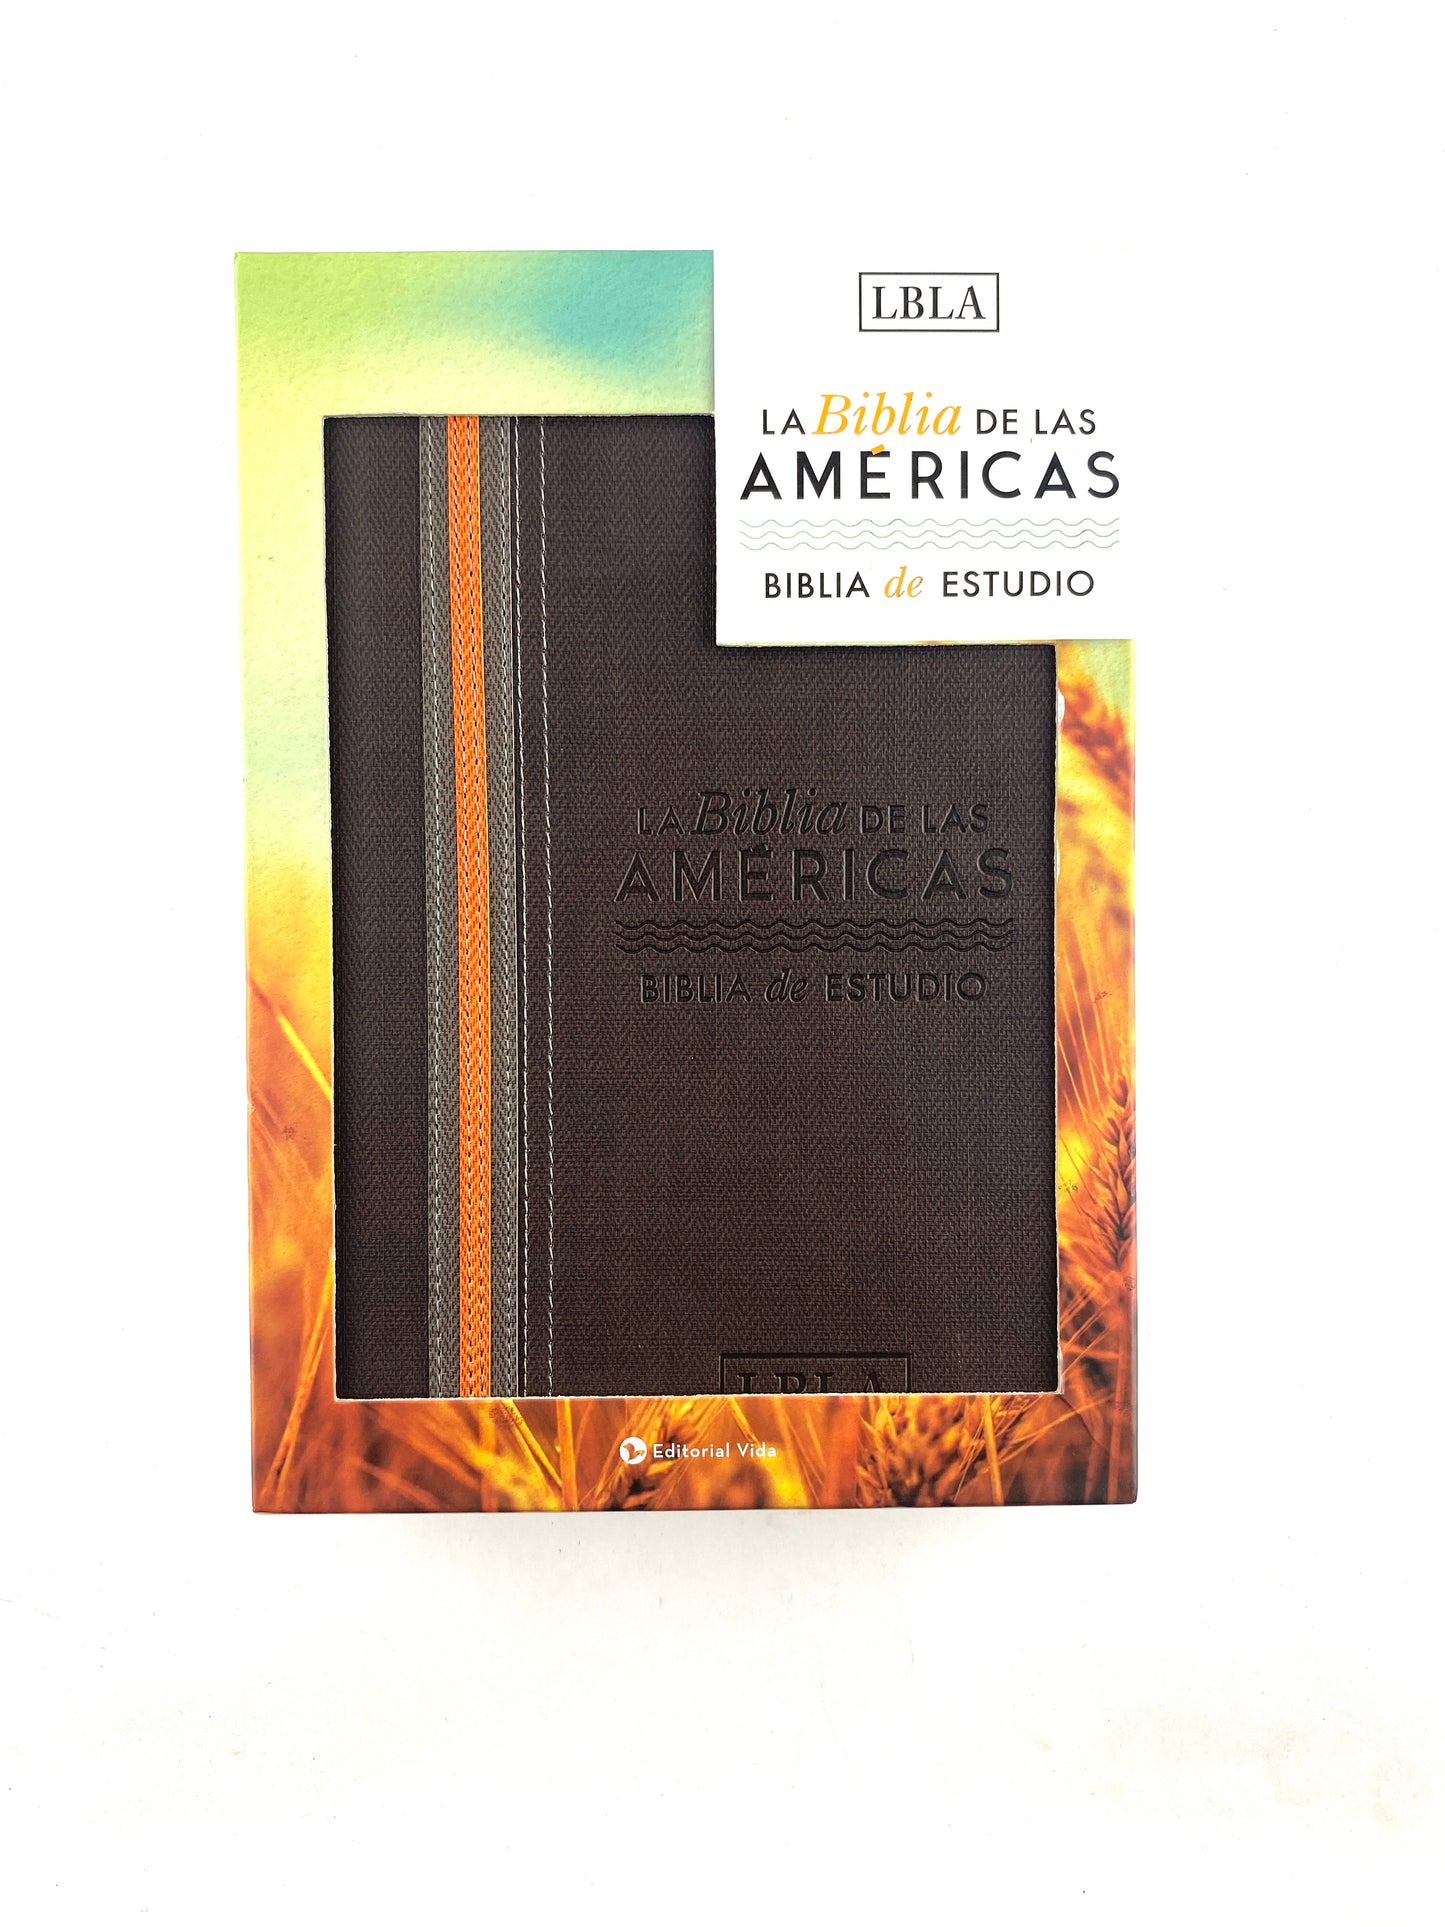 Biblia de estudio de las américas